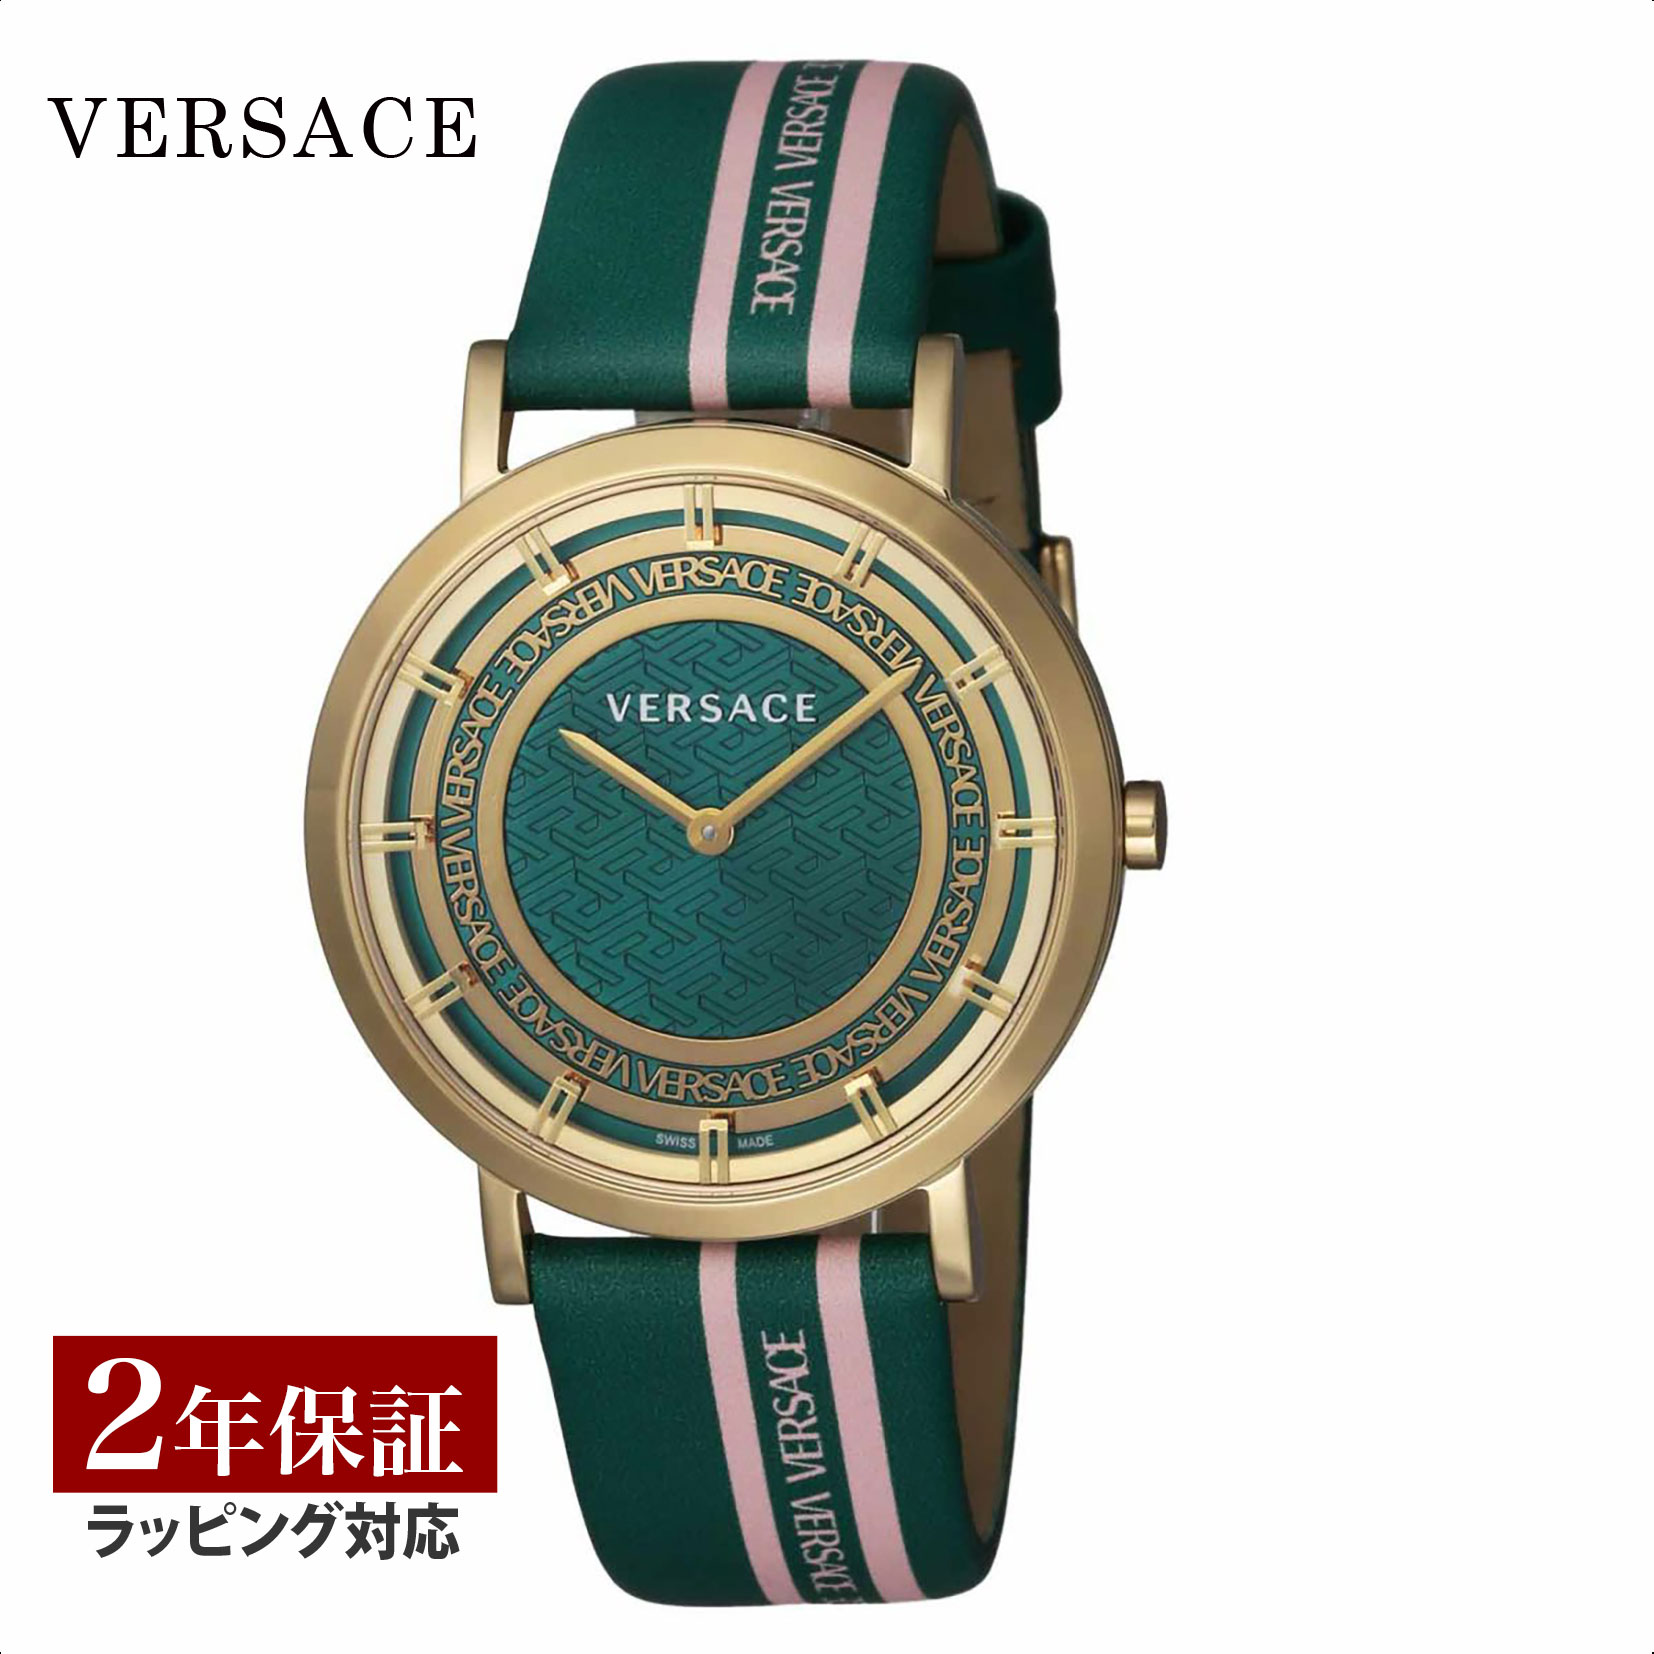 【当店限定】 ヴェルサーチェ ヴェルサーチ VERSACE レディース 時計 VERSACE NEW GENERATION ニュージェネレーション クオーツ グリーン VE3M00322 時計 腕時計 高級腕時計 ブランド